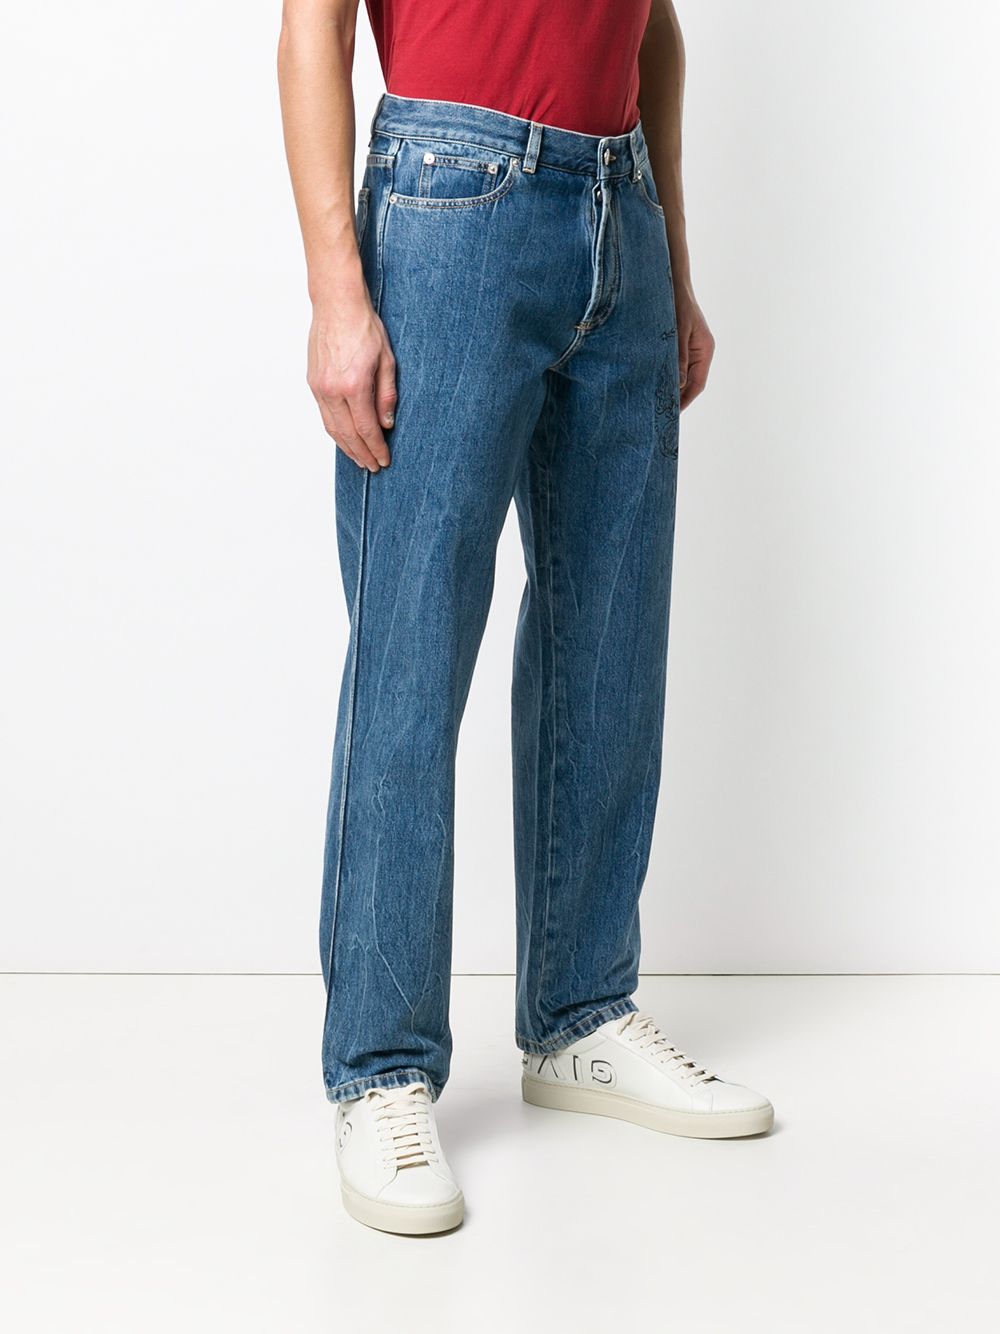 фото Givenchy джинсы узкого кроя с вышивкой